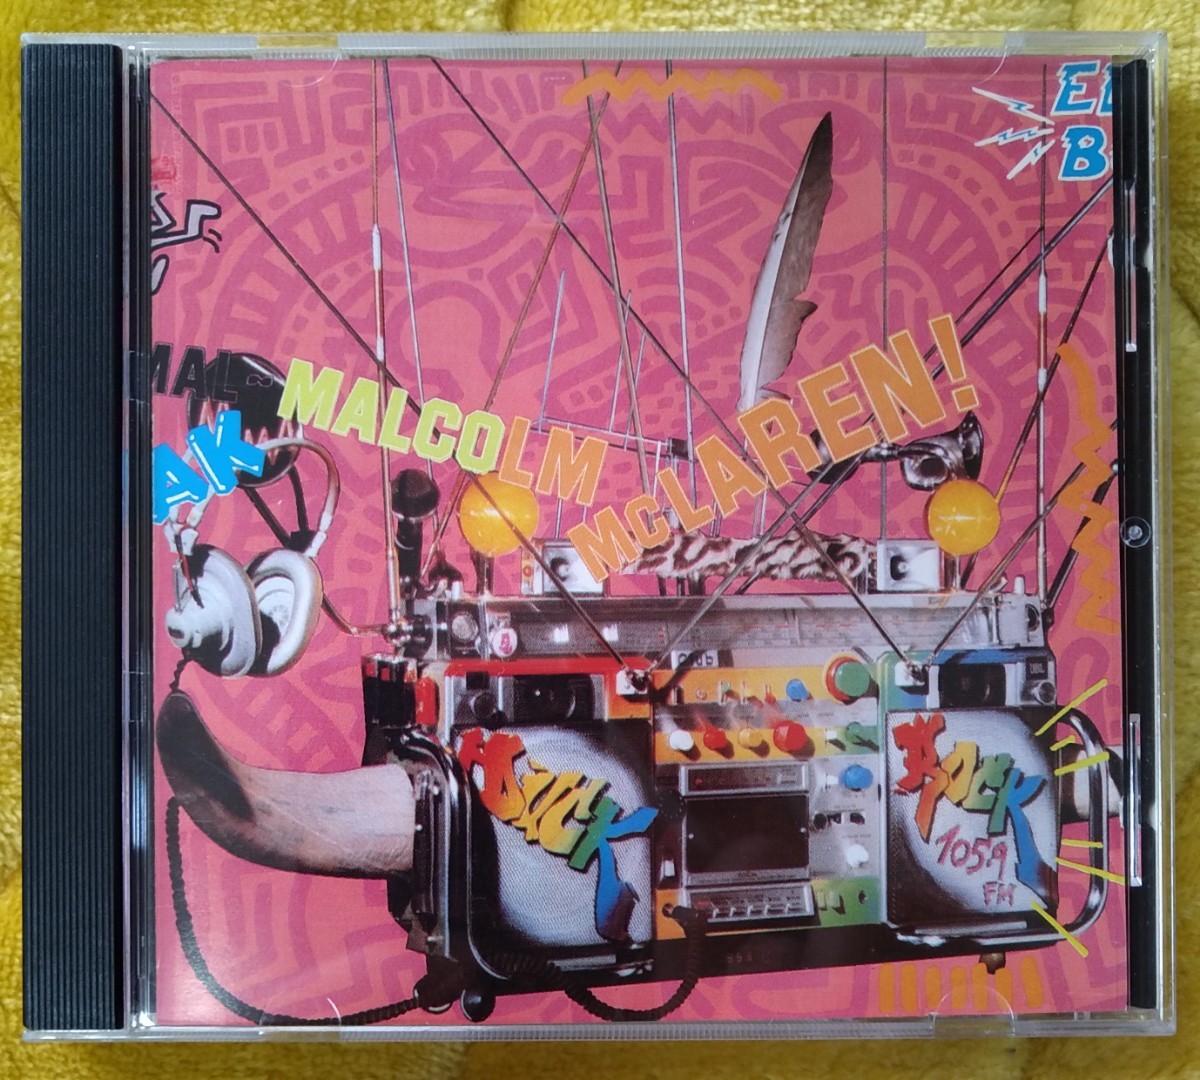 MALCOLM McLAREN DUCK ROCK 廃盤輸入盤中古CD マルコム・マクラーレン ダック・ロック キース・ヘリング トレヴァー・ホーン 422-842 871-2_画像1